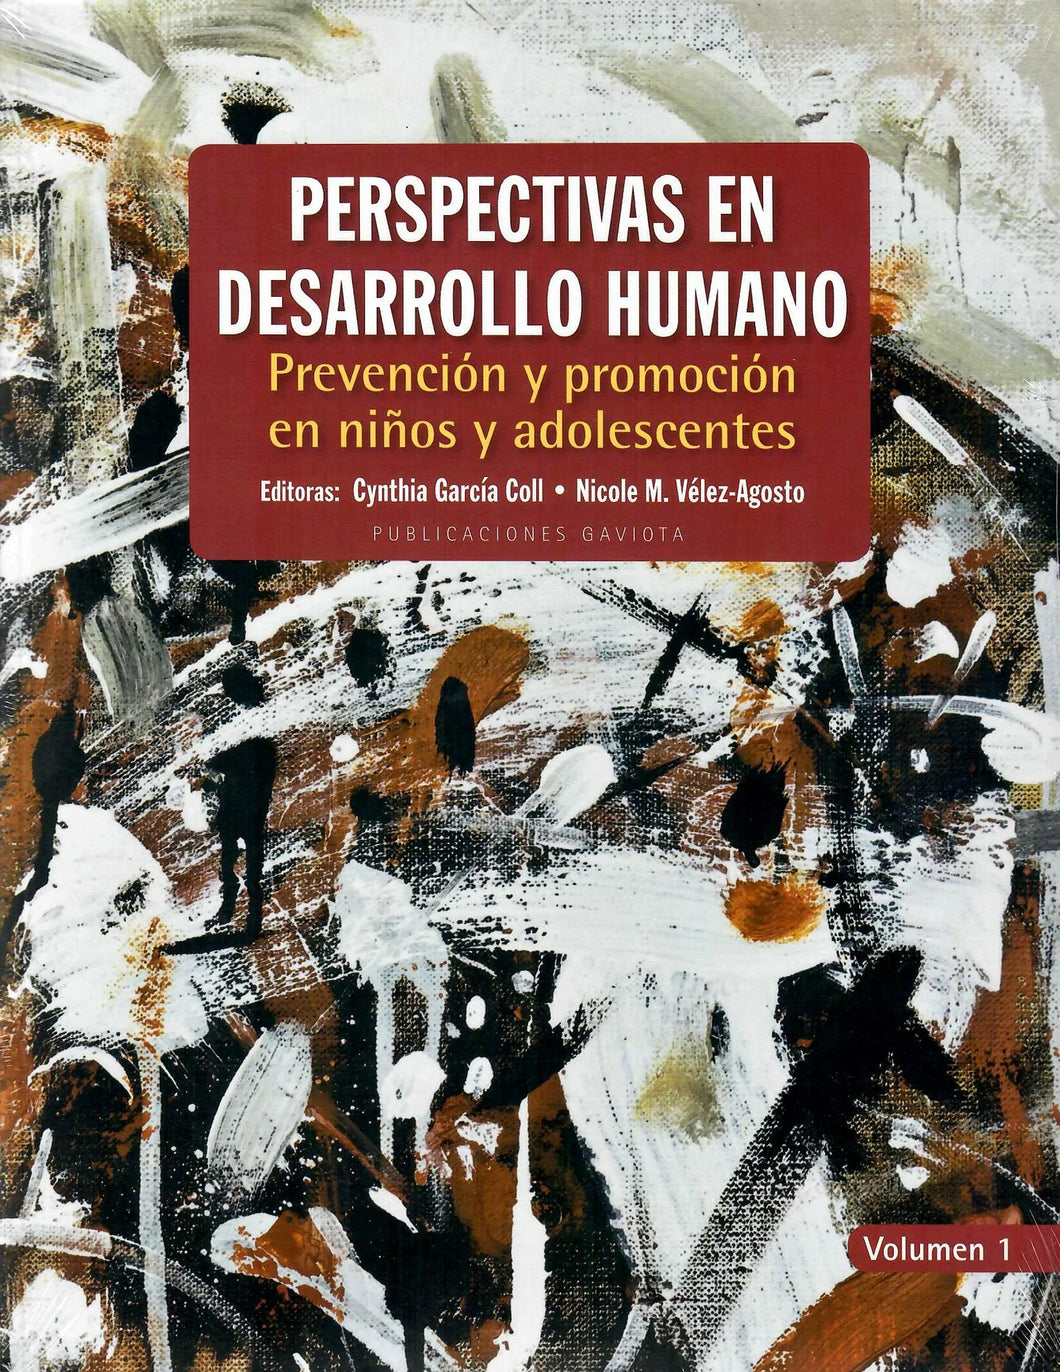 PERSPECTIVAS EN DESARROLLO HUMANO: PREVENCIÓN Y PROMOCIÓN EN NIÑOS Y ADOLESCENTES (VOLUMEN 1) - Cynthia García Coll y Nicole M. Vélez-Agosto, Eds.